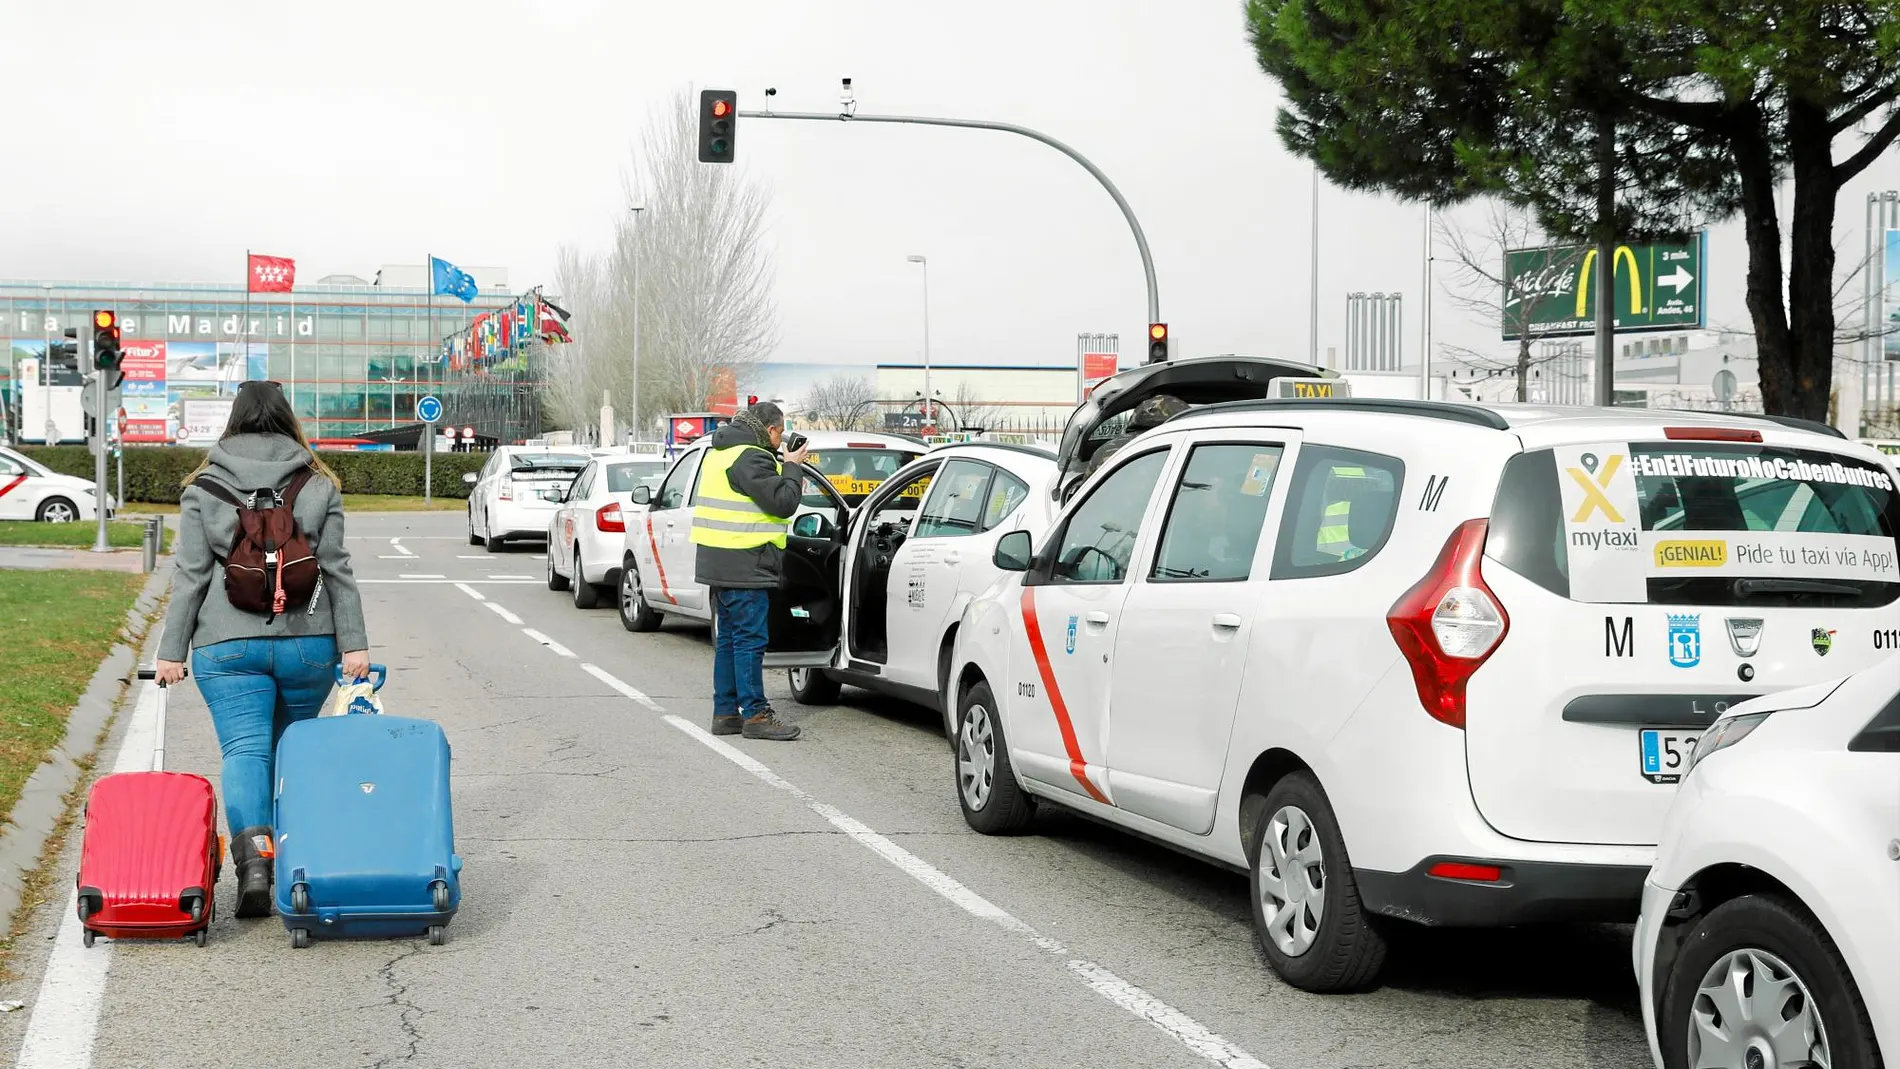 La huelga del taxi del pasado enero ha incidido con fuerza en los resultados semestrales. Foto: Jesús G. Feria